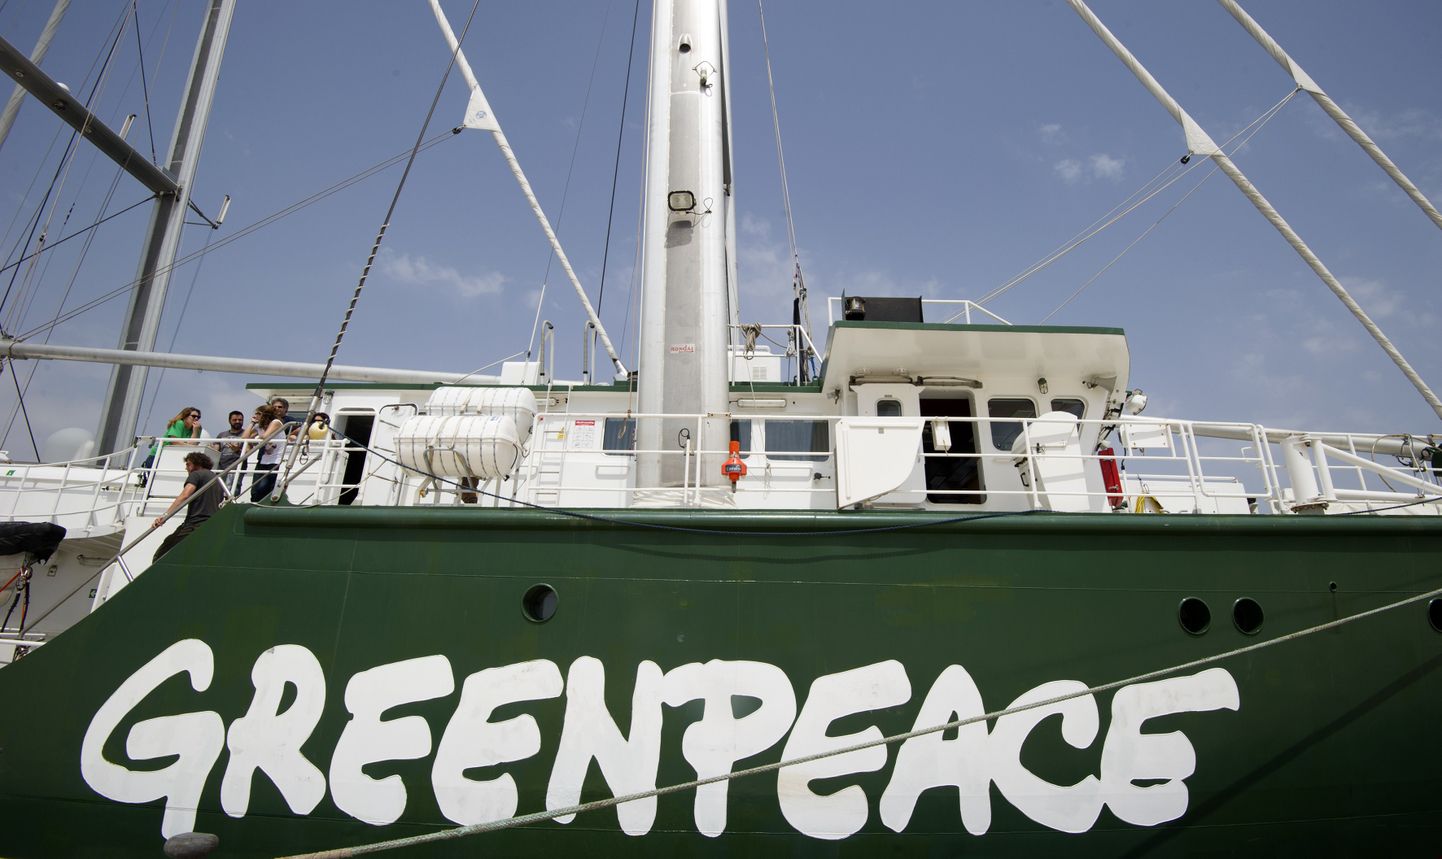 Keskkonnaorganisatsiooni Greenpeace'i laev Rainbow Warrior.